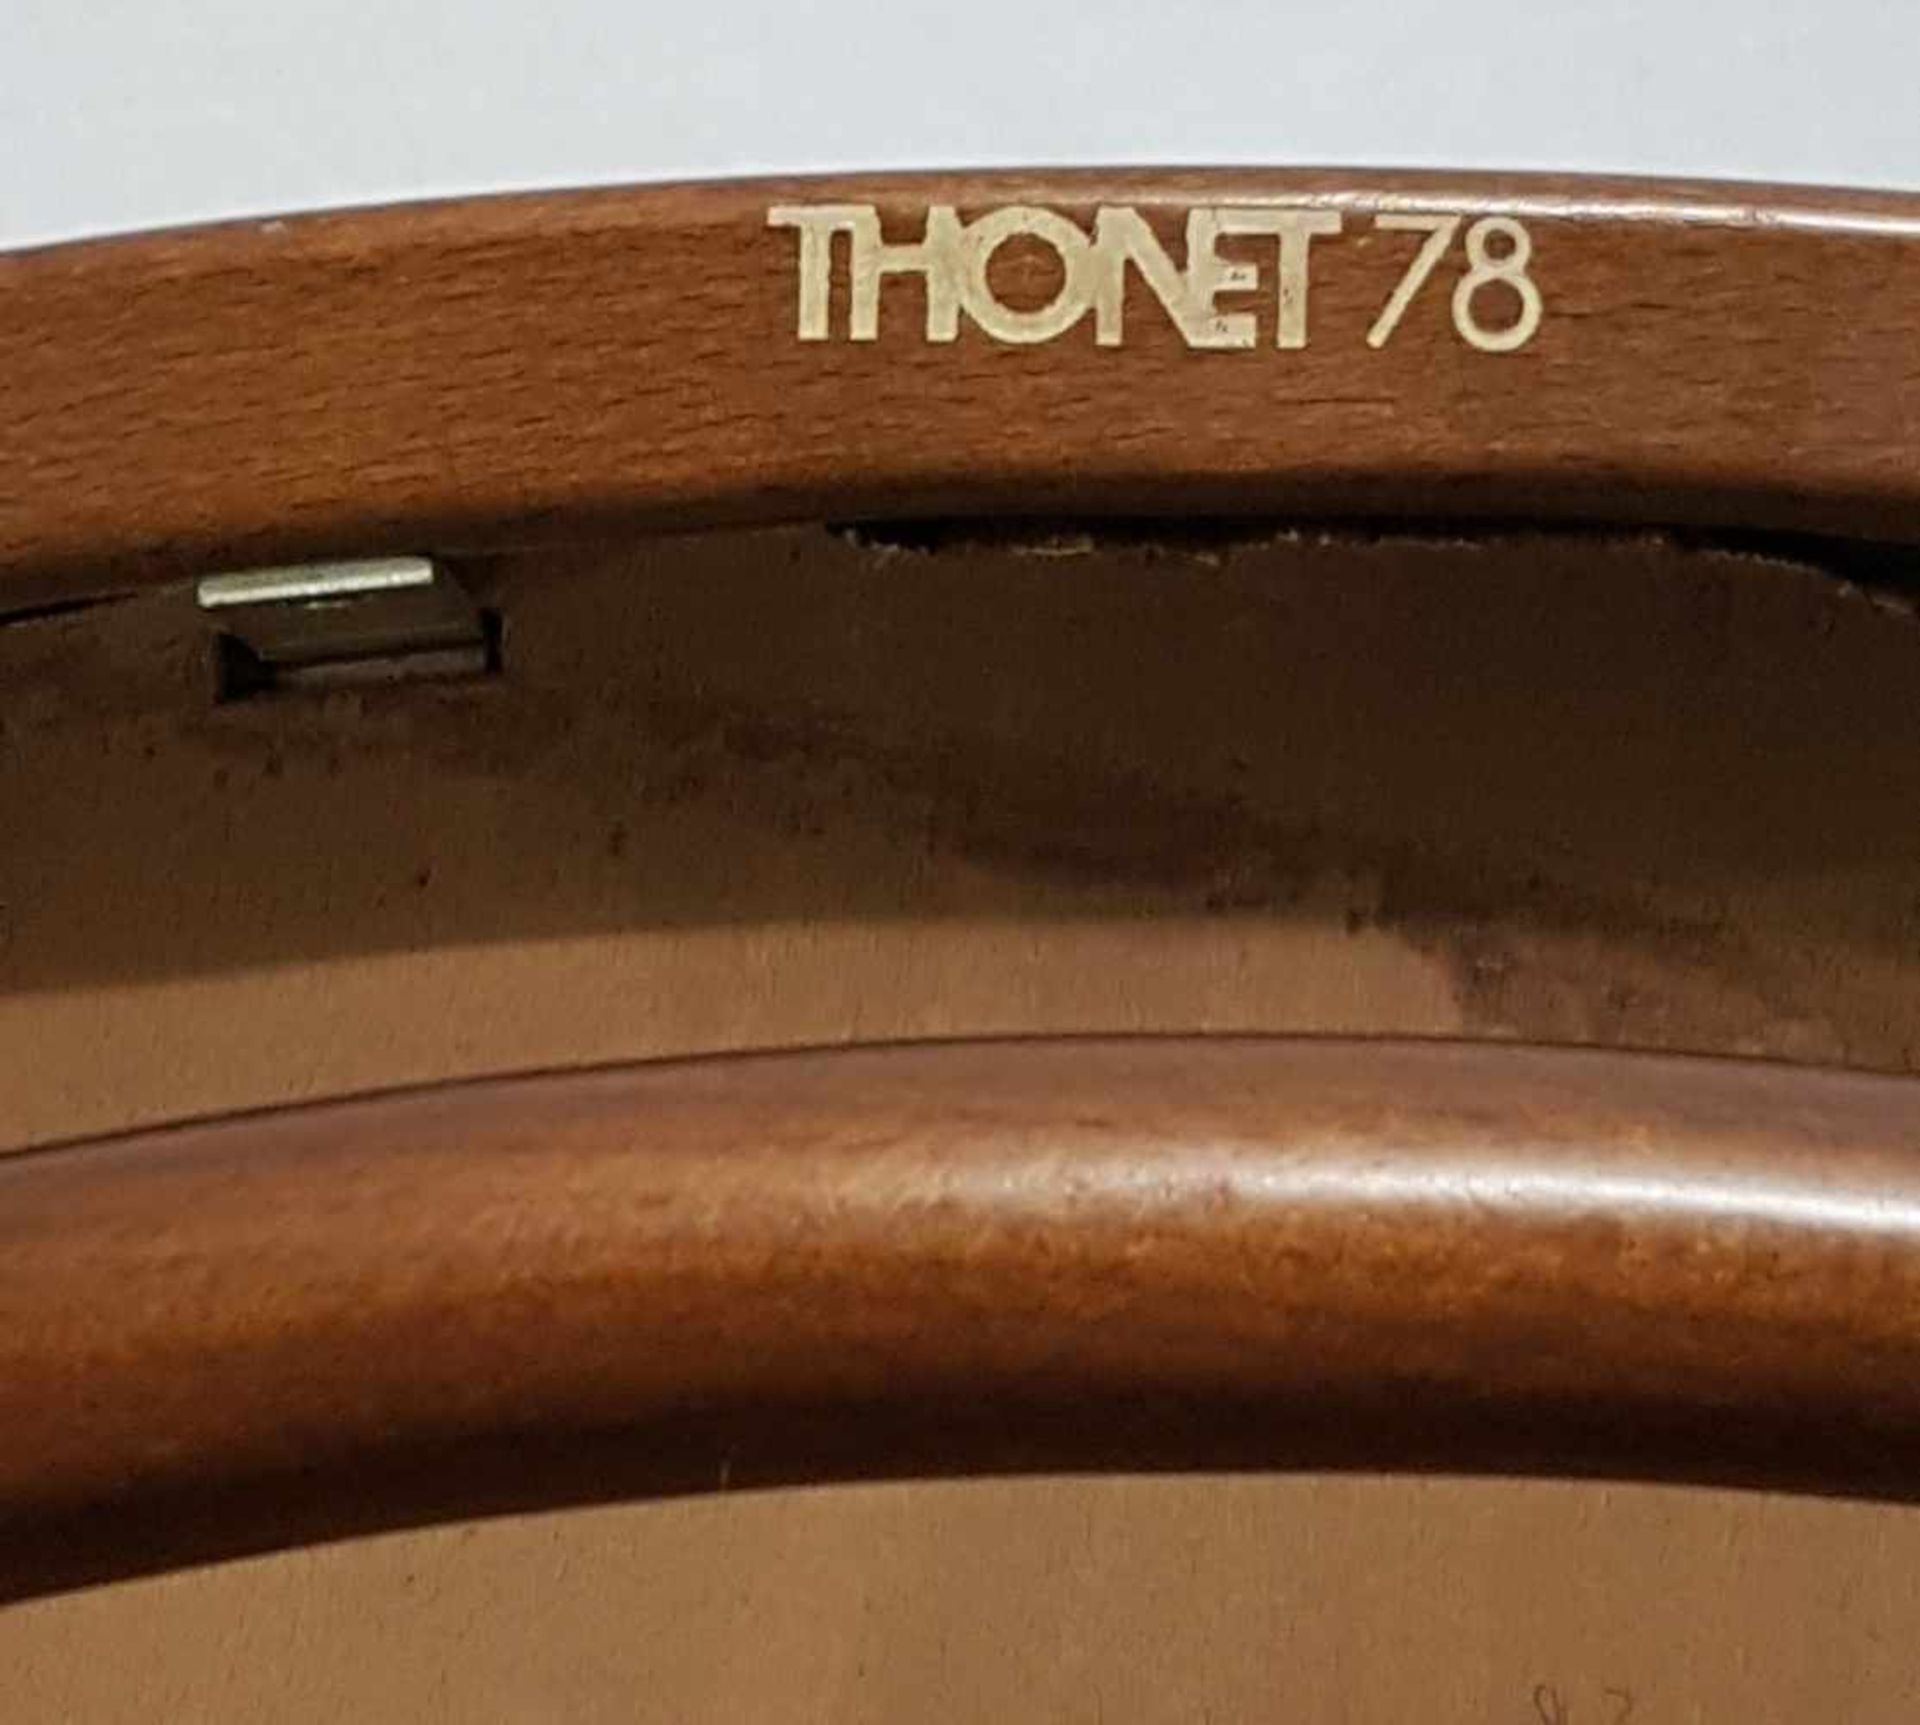 Satz von vier Stühlen - Thonet,Buchenbugholz,hohe Lehne,Zargeninnenseiten gemarkt "Thonet 78", - Bild 6 aus 6